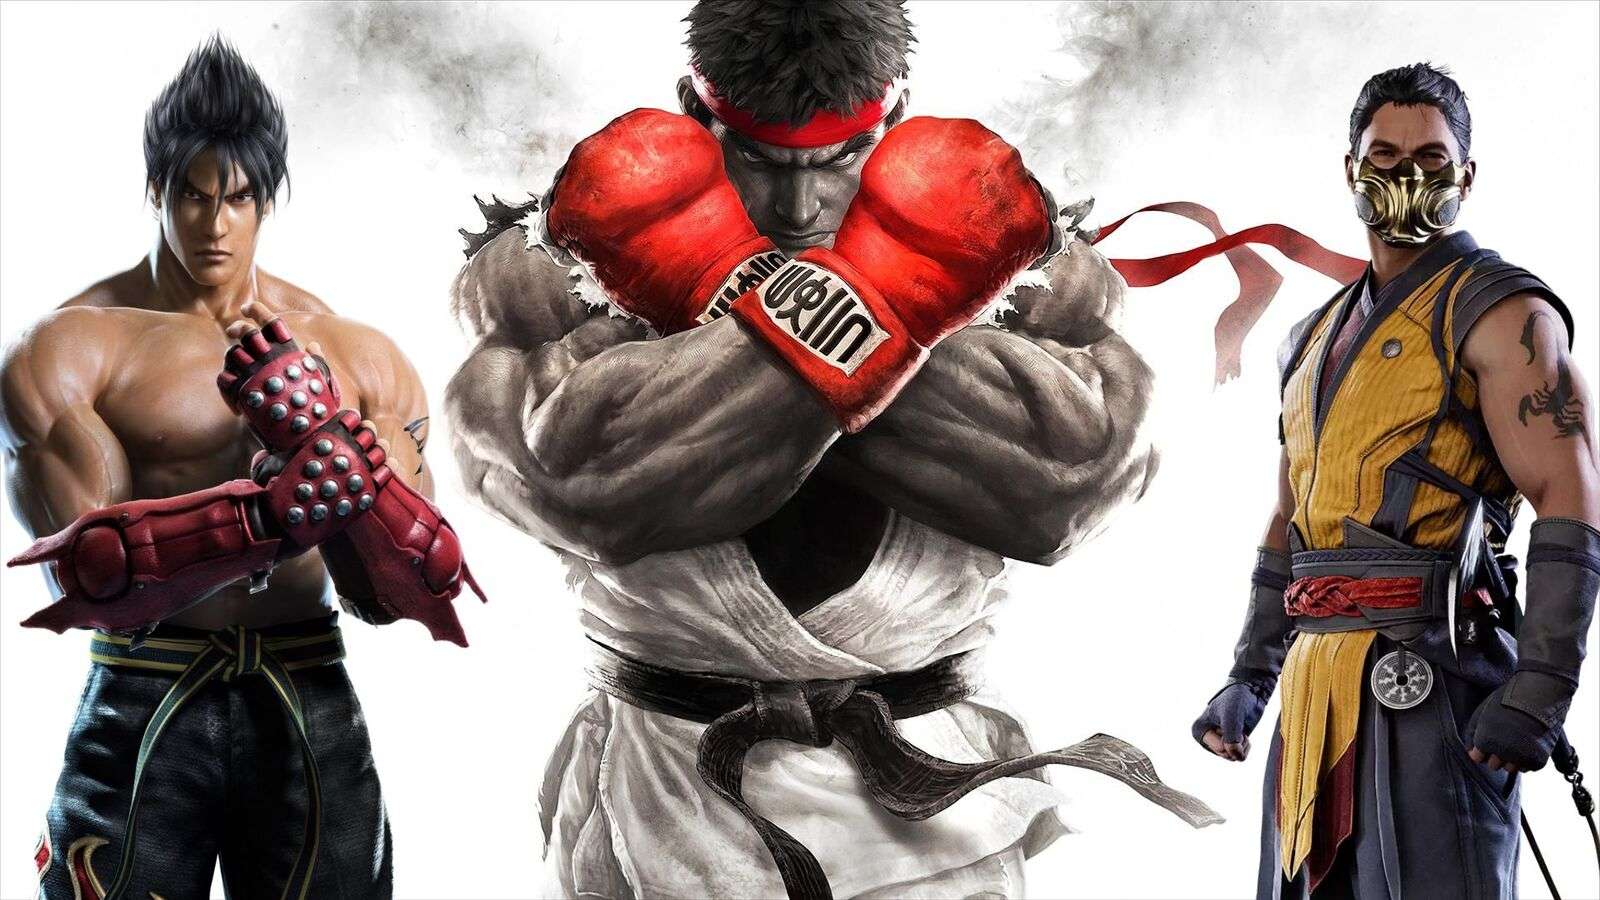 Jin Kazama, Ryu and Scorpion